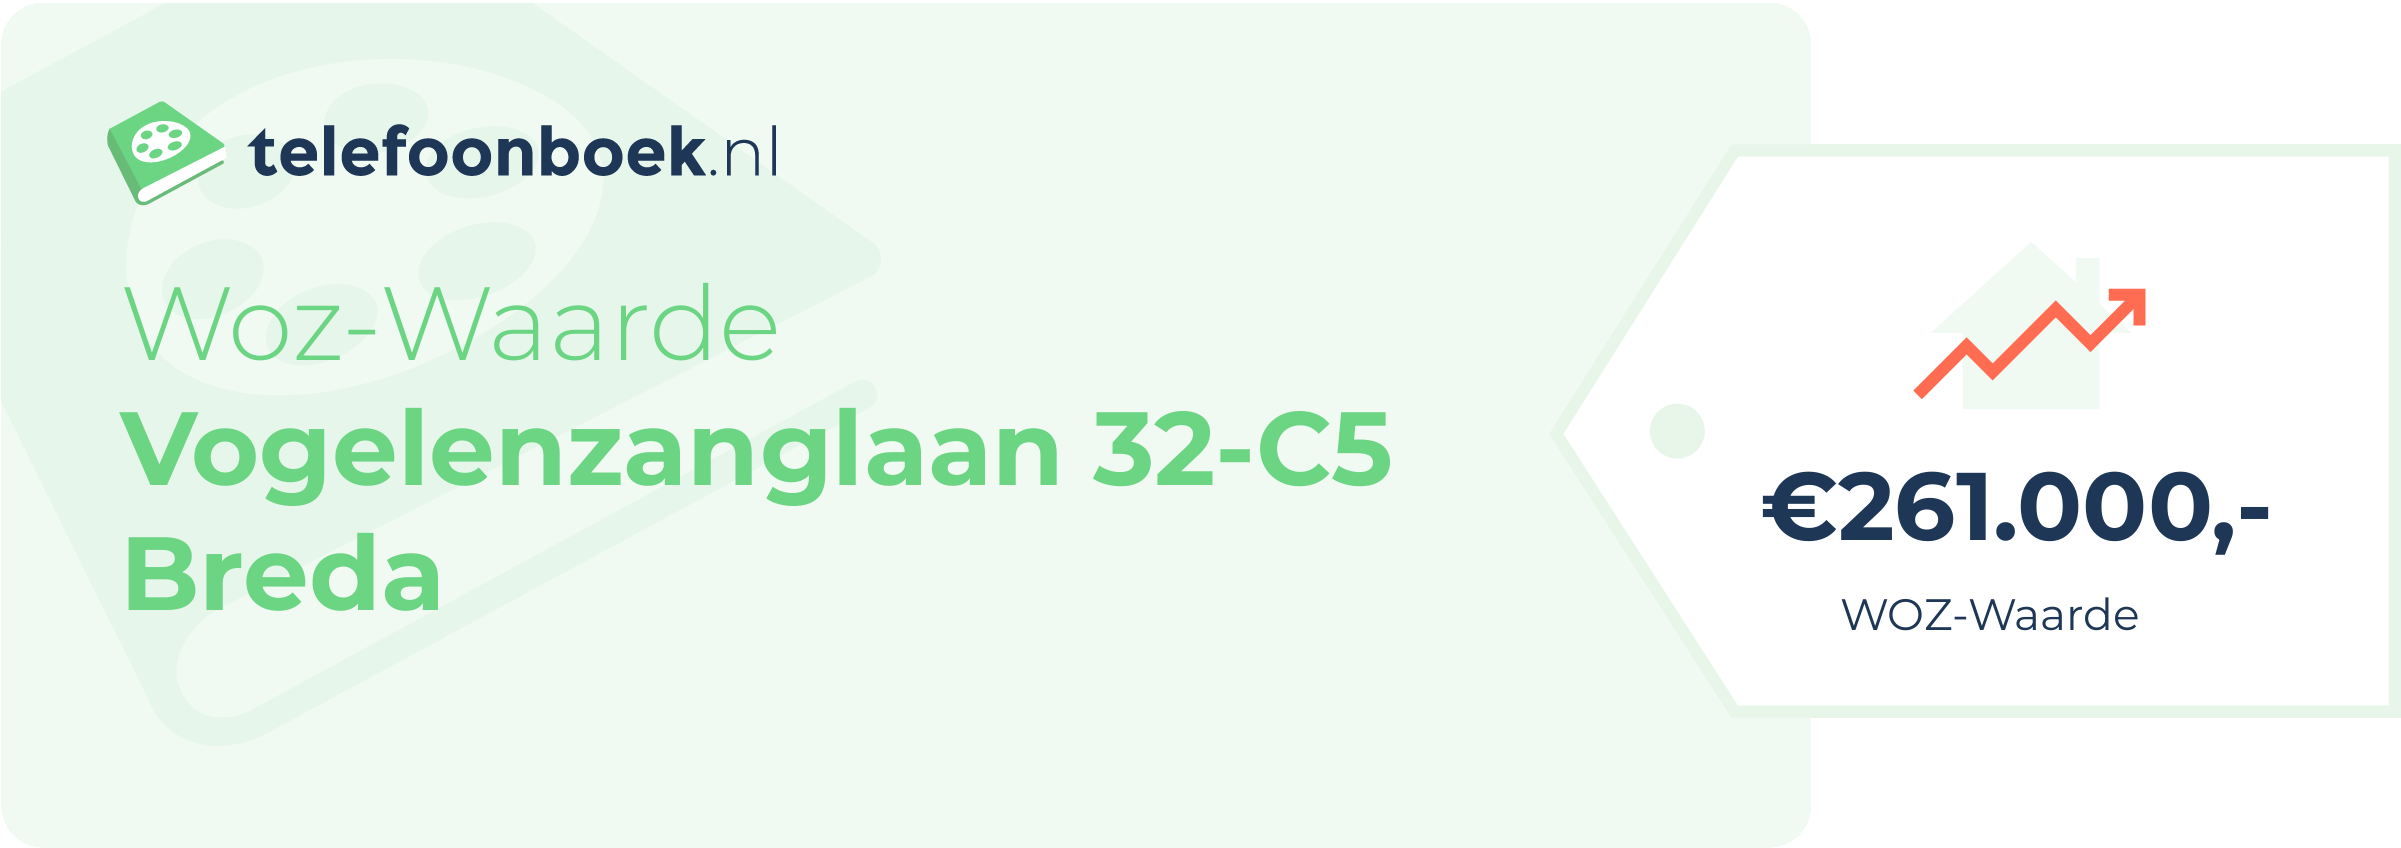 WOZ-waarde Vogelenzanglaan 32-C5 Breda